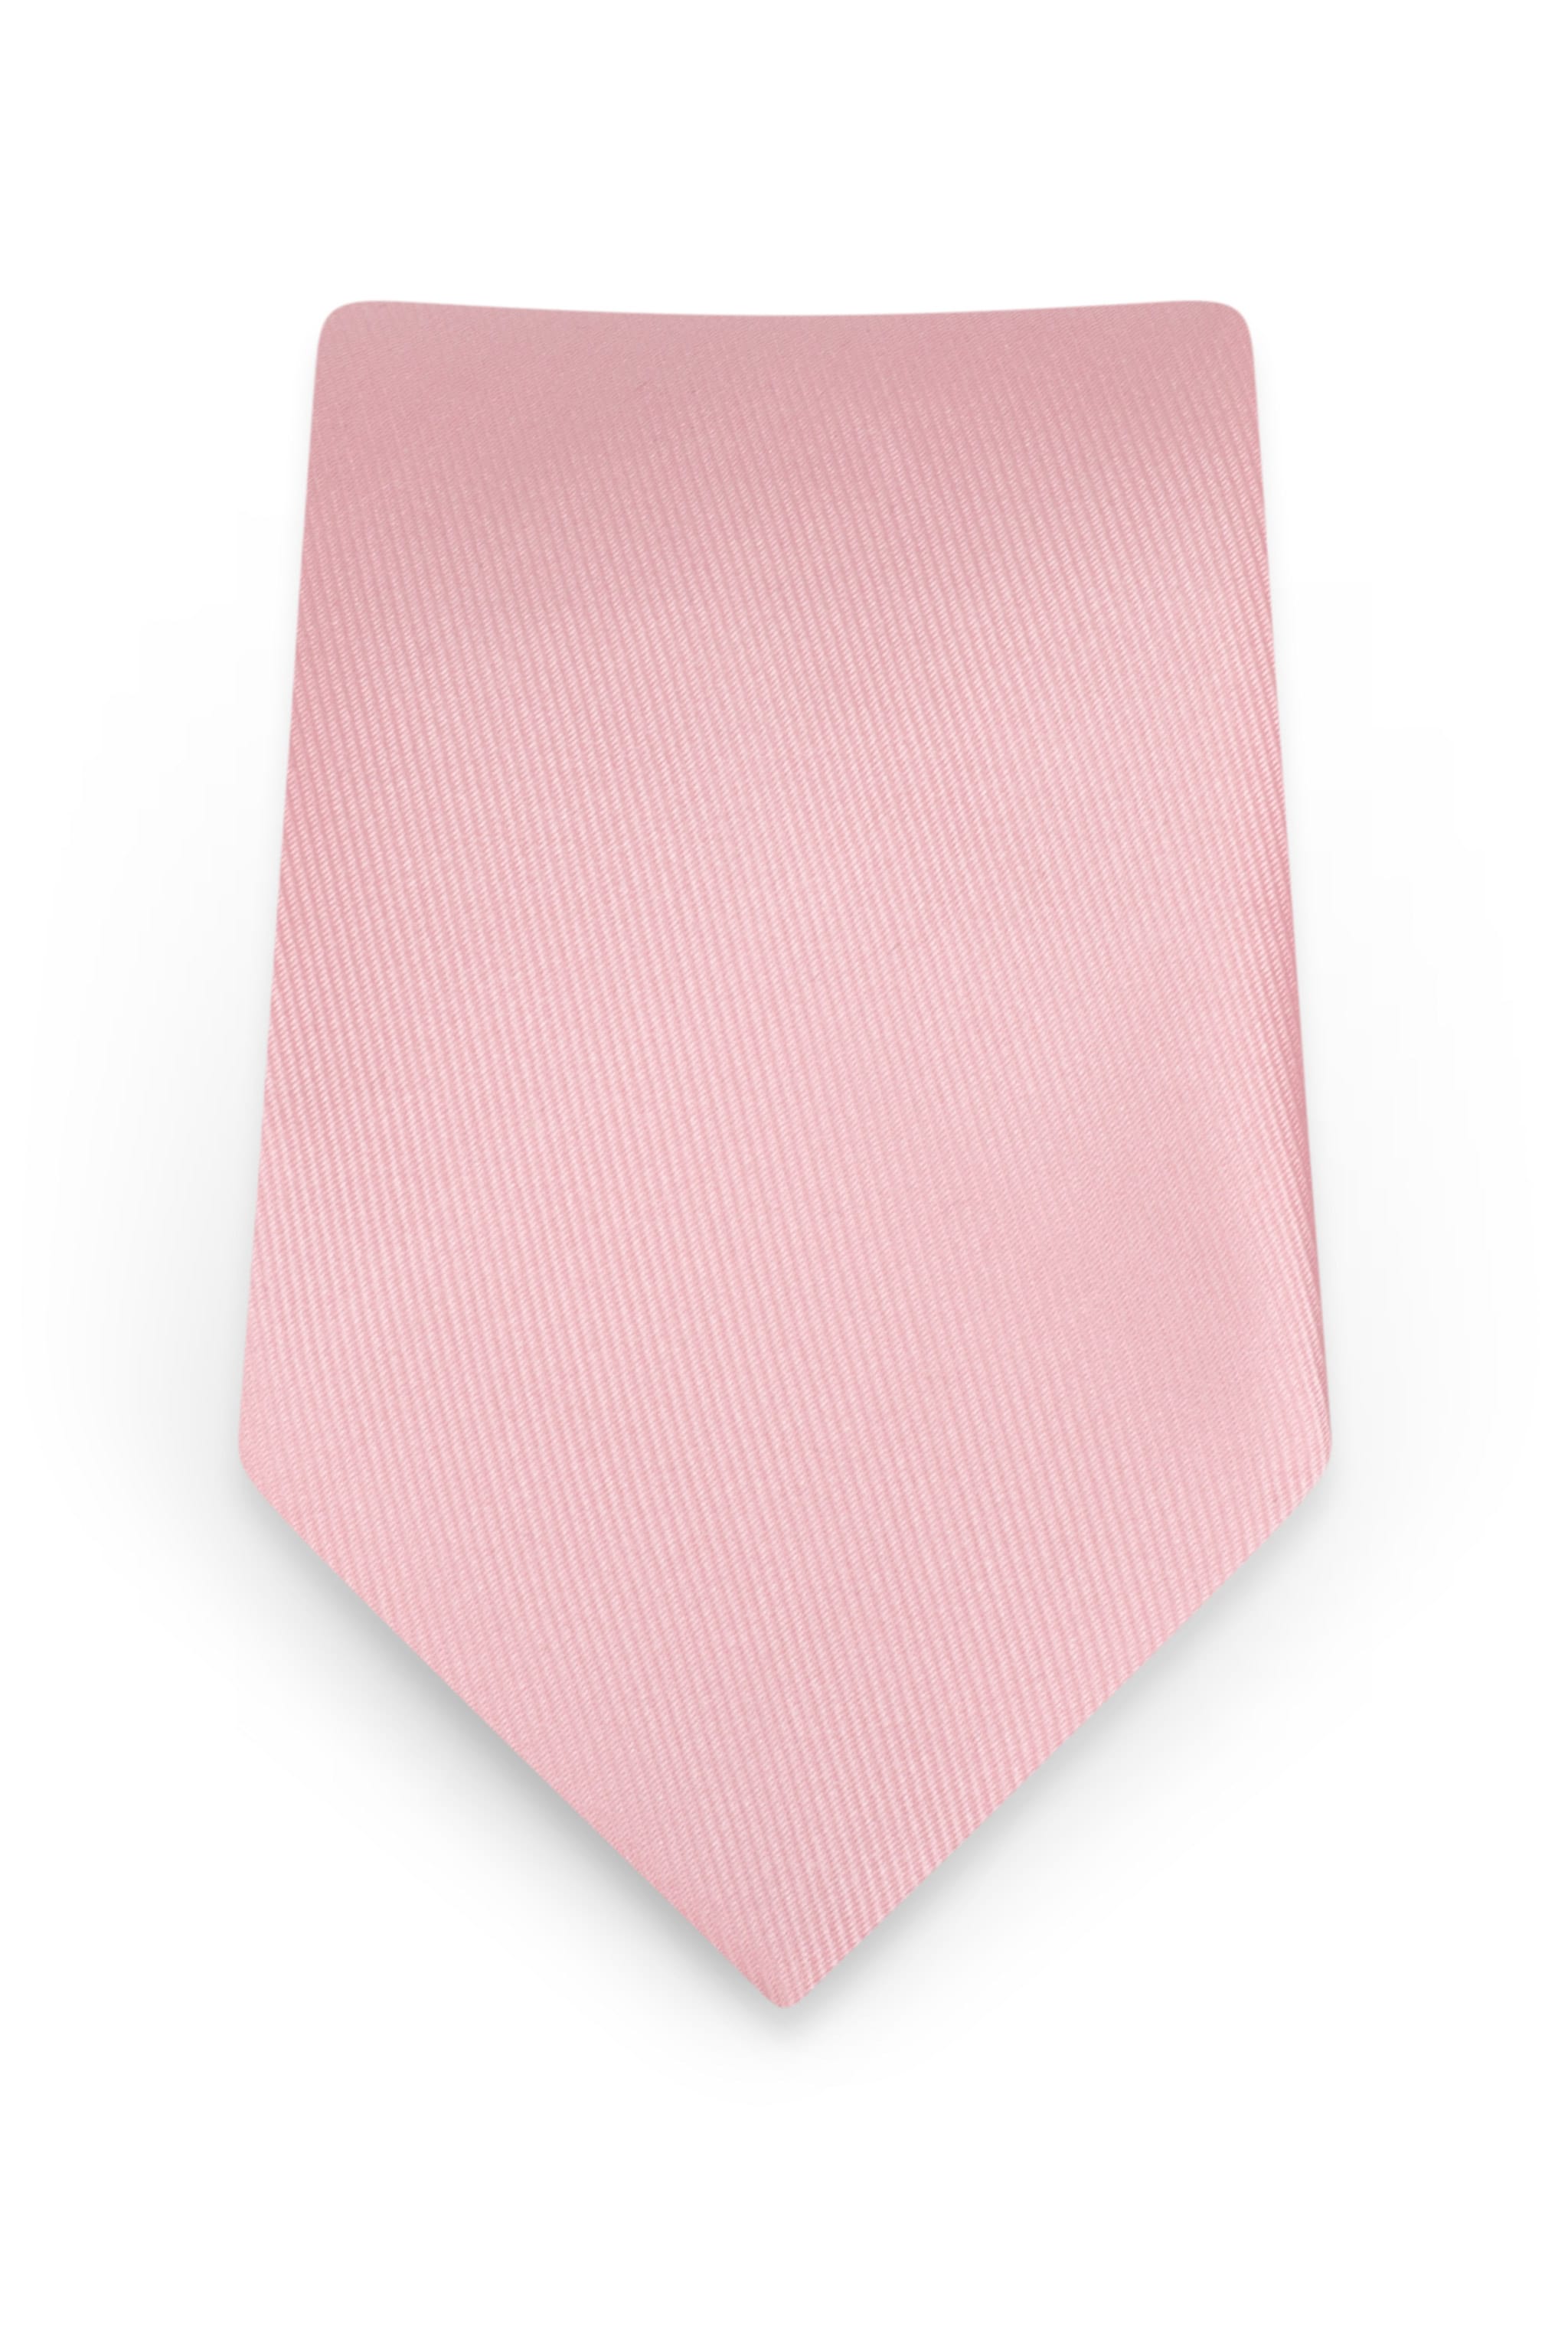 Solid Rose Petal Self-Tie Windsor Tie